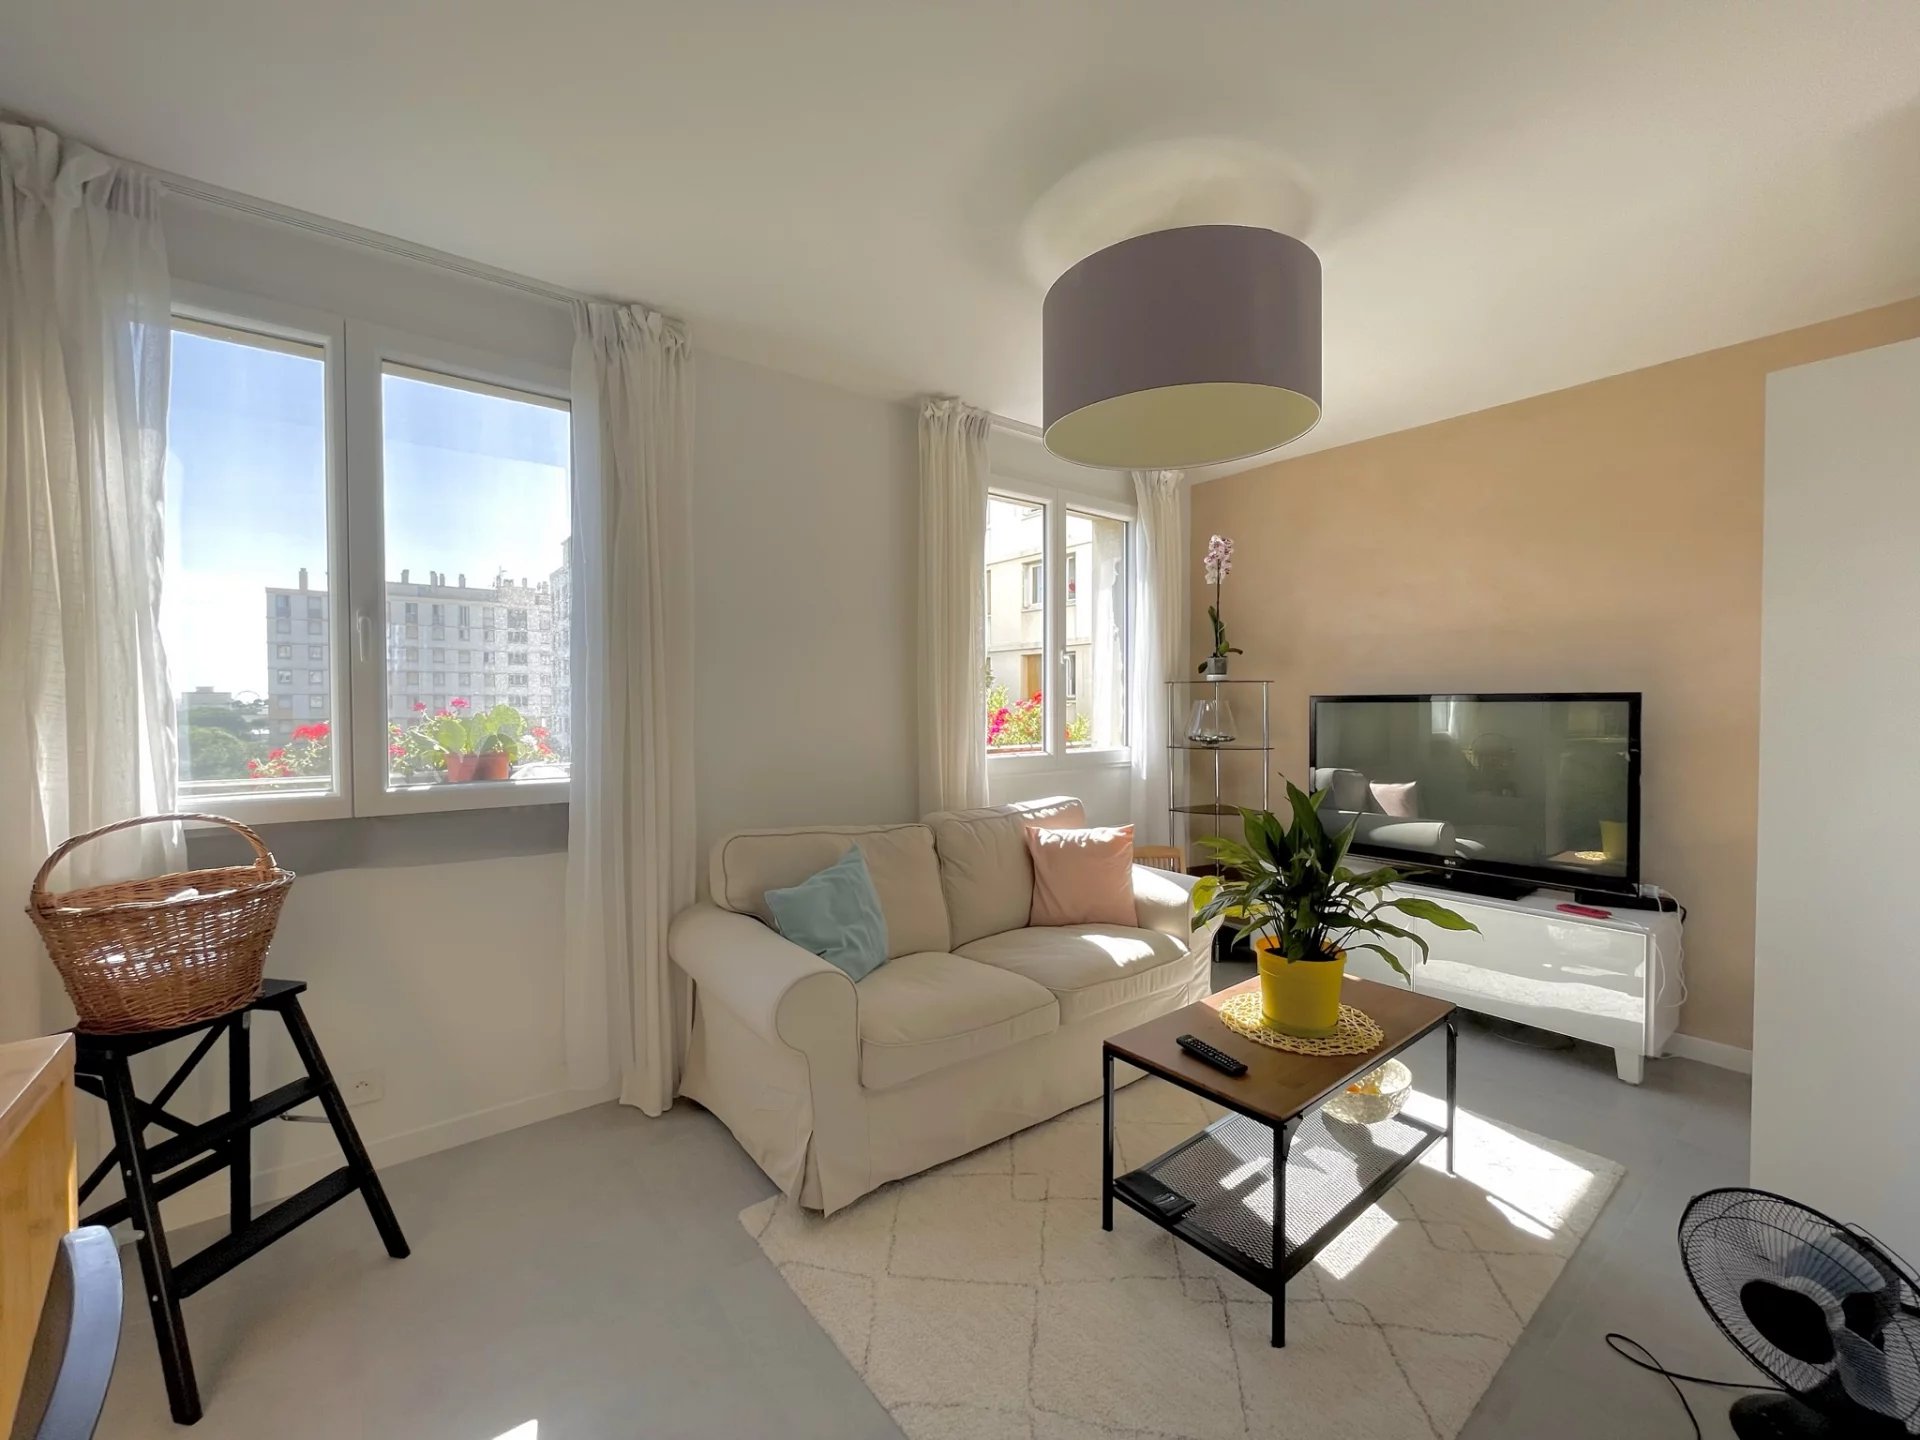 Sale Apartment - Marseille 9ème